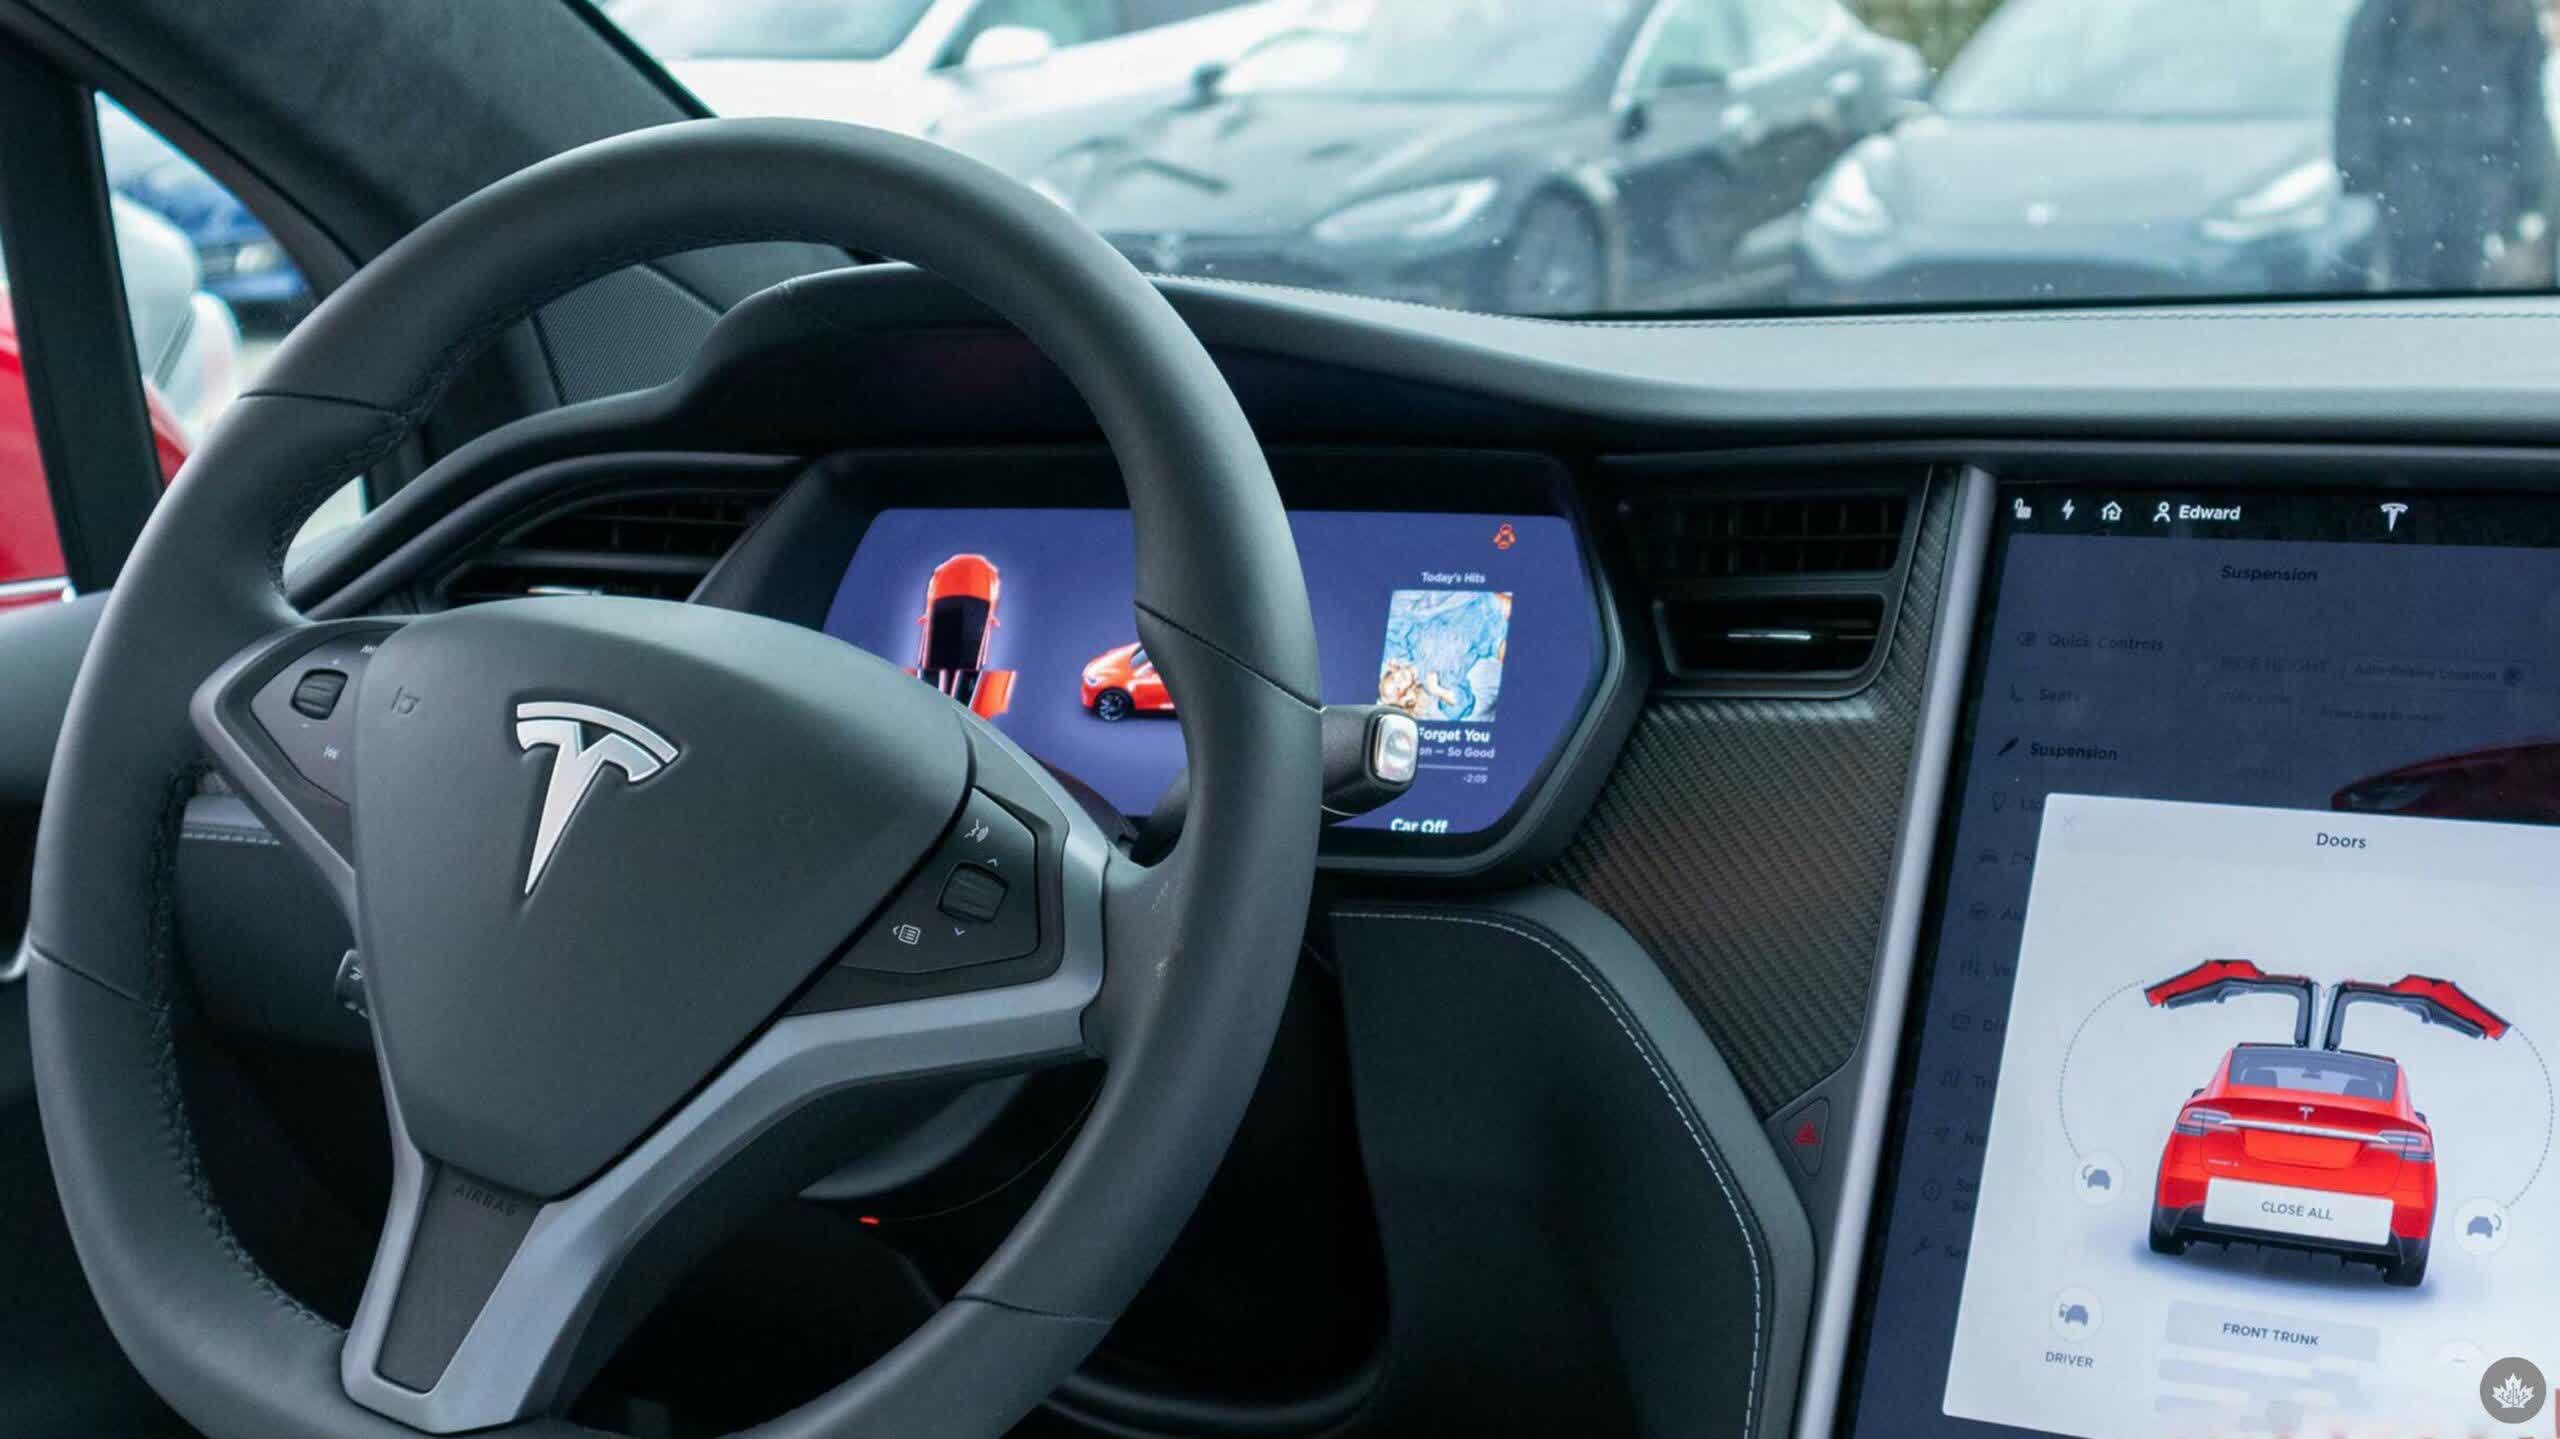 Investigadores estadounidenses vinculan el piloto automático de Tesla con decenas de muertes y casi 1.000 accidentes